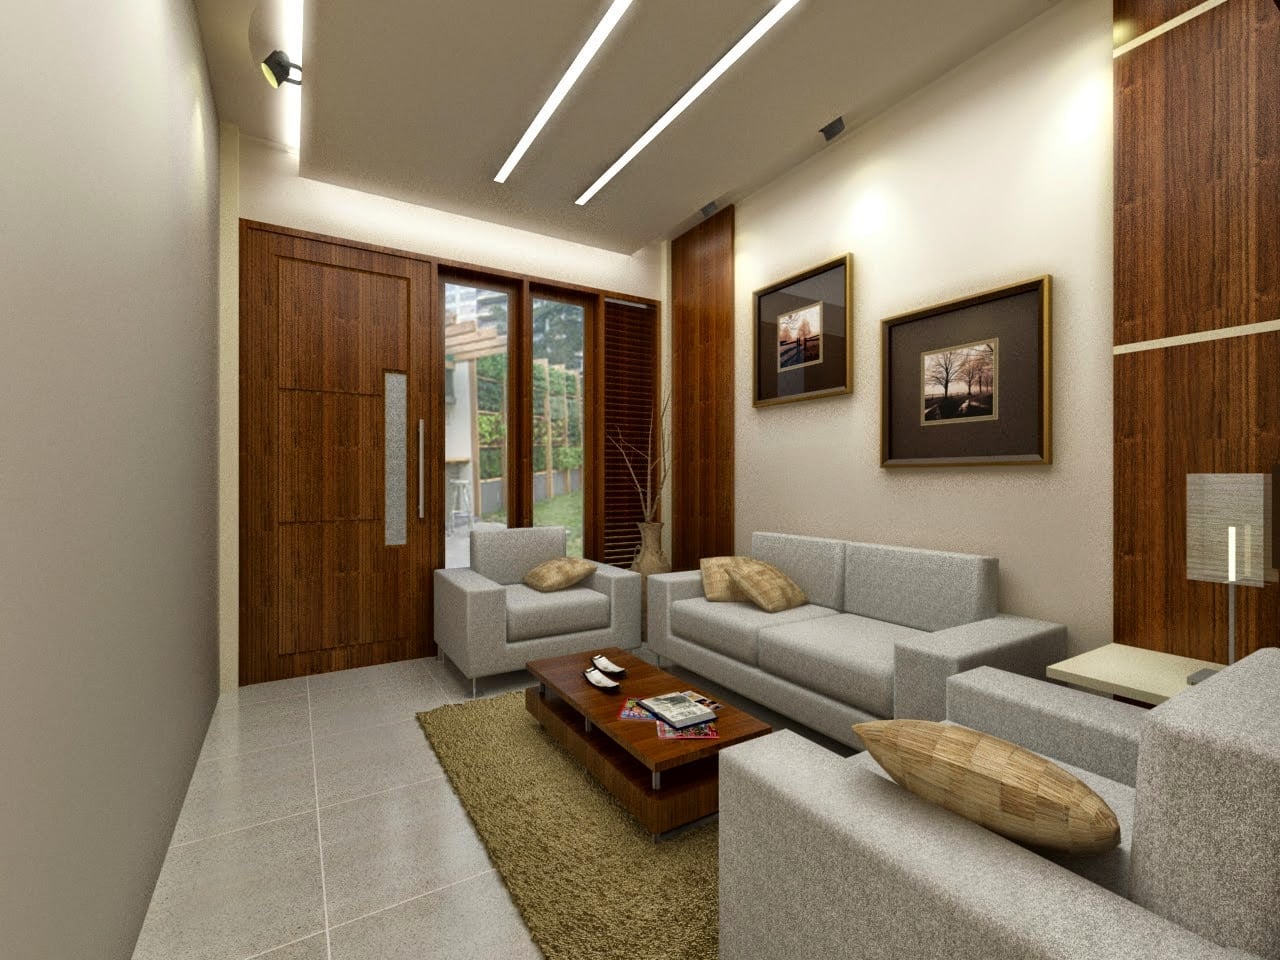 Luxurius Desain Interior Rumah Idaman Terbaru 47 Renovasi Ide Renovasi Rumah dengan Desain Interior Rumah Idaman Terbaru